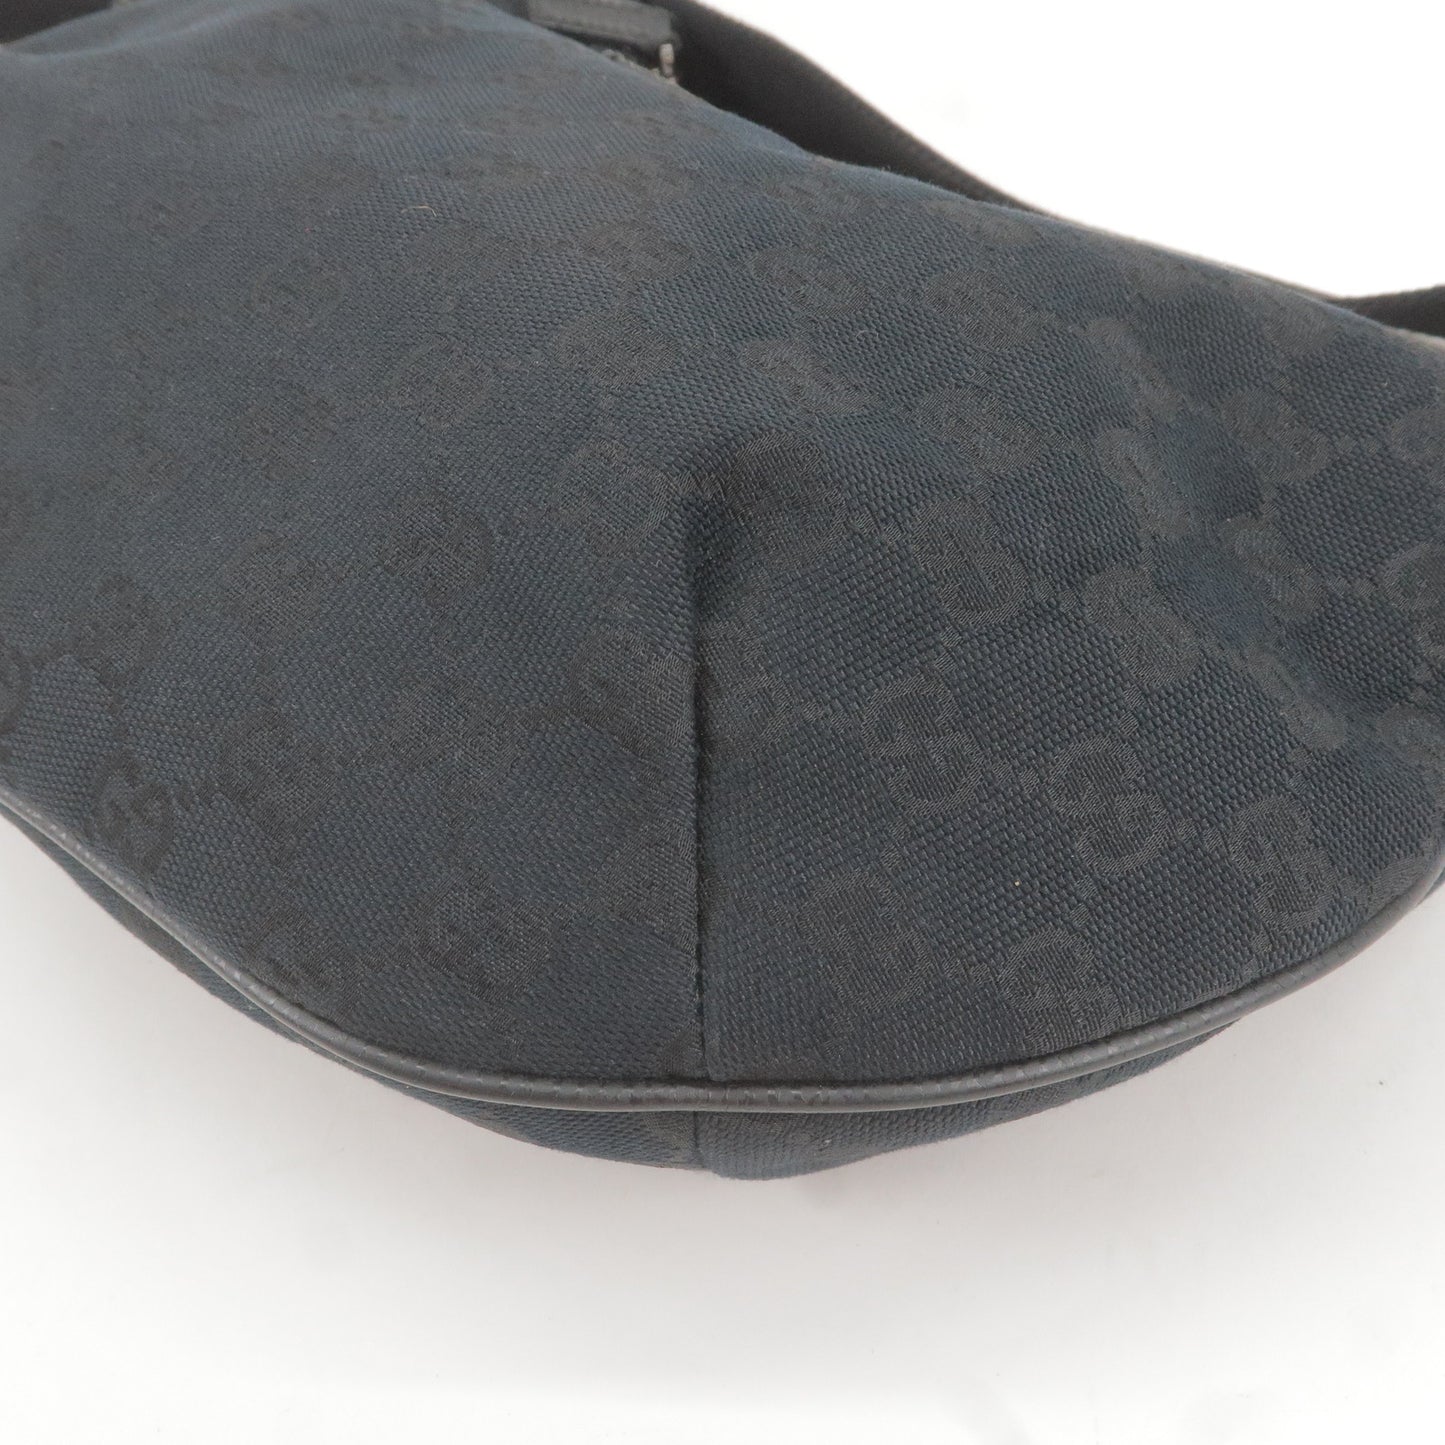 GUCCI GG Canvas Leather Shoulder Bag Hand Bag Black 181092